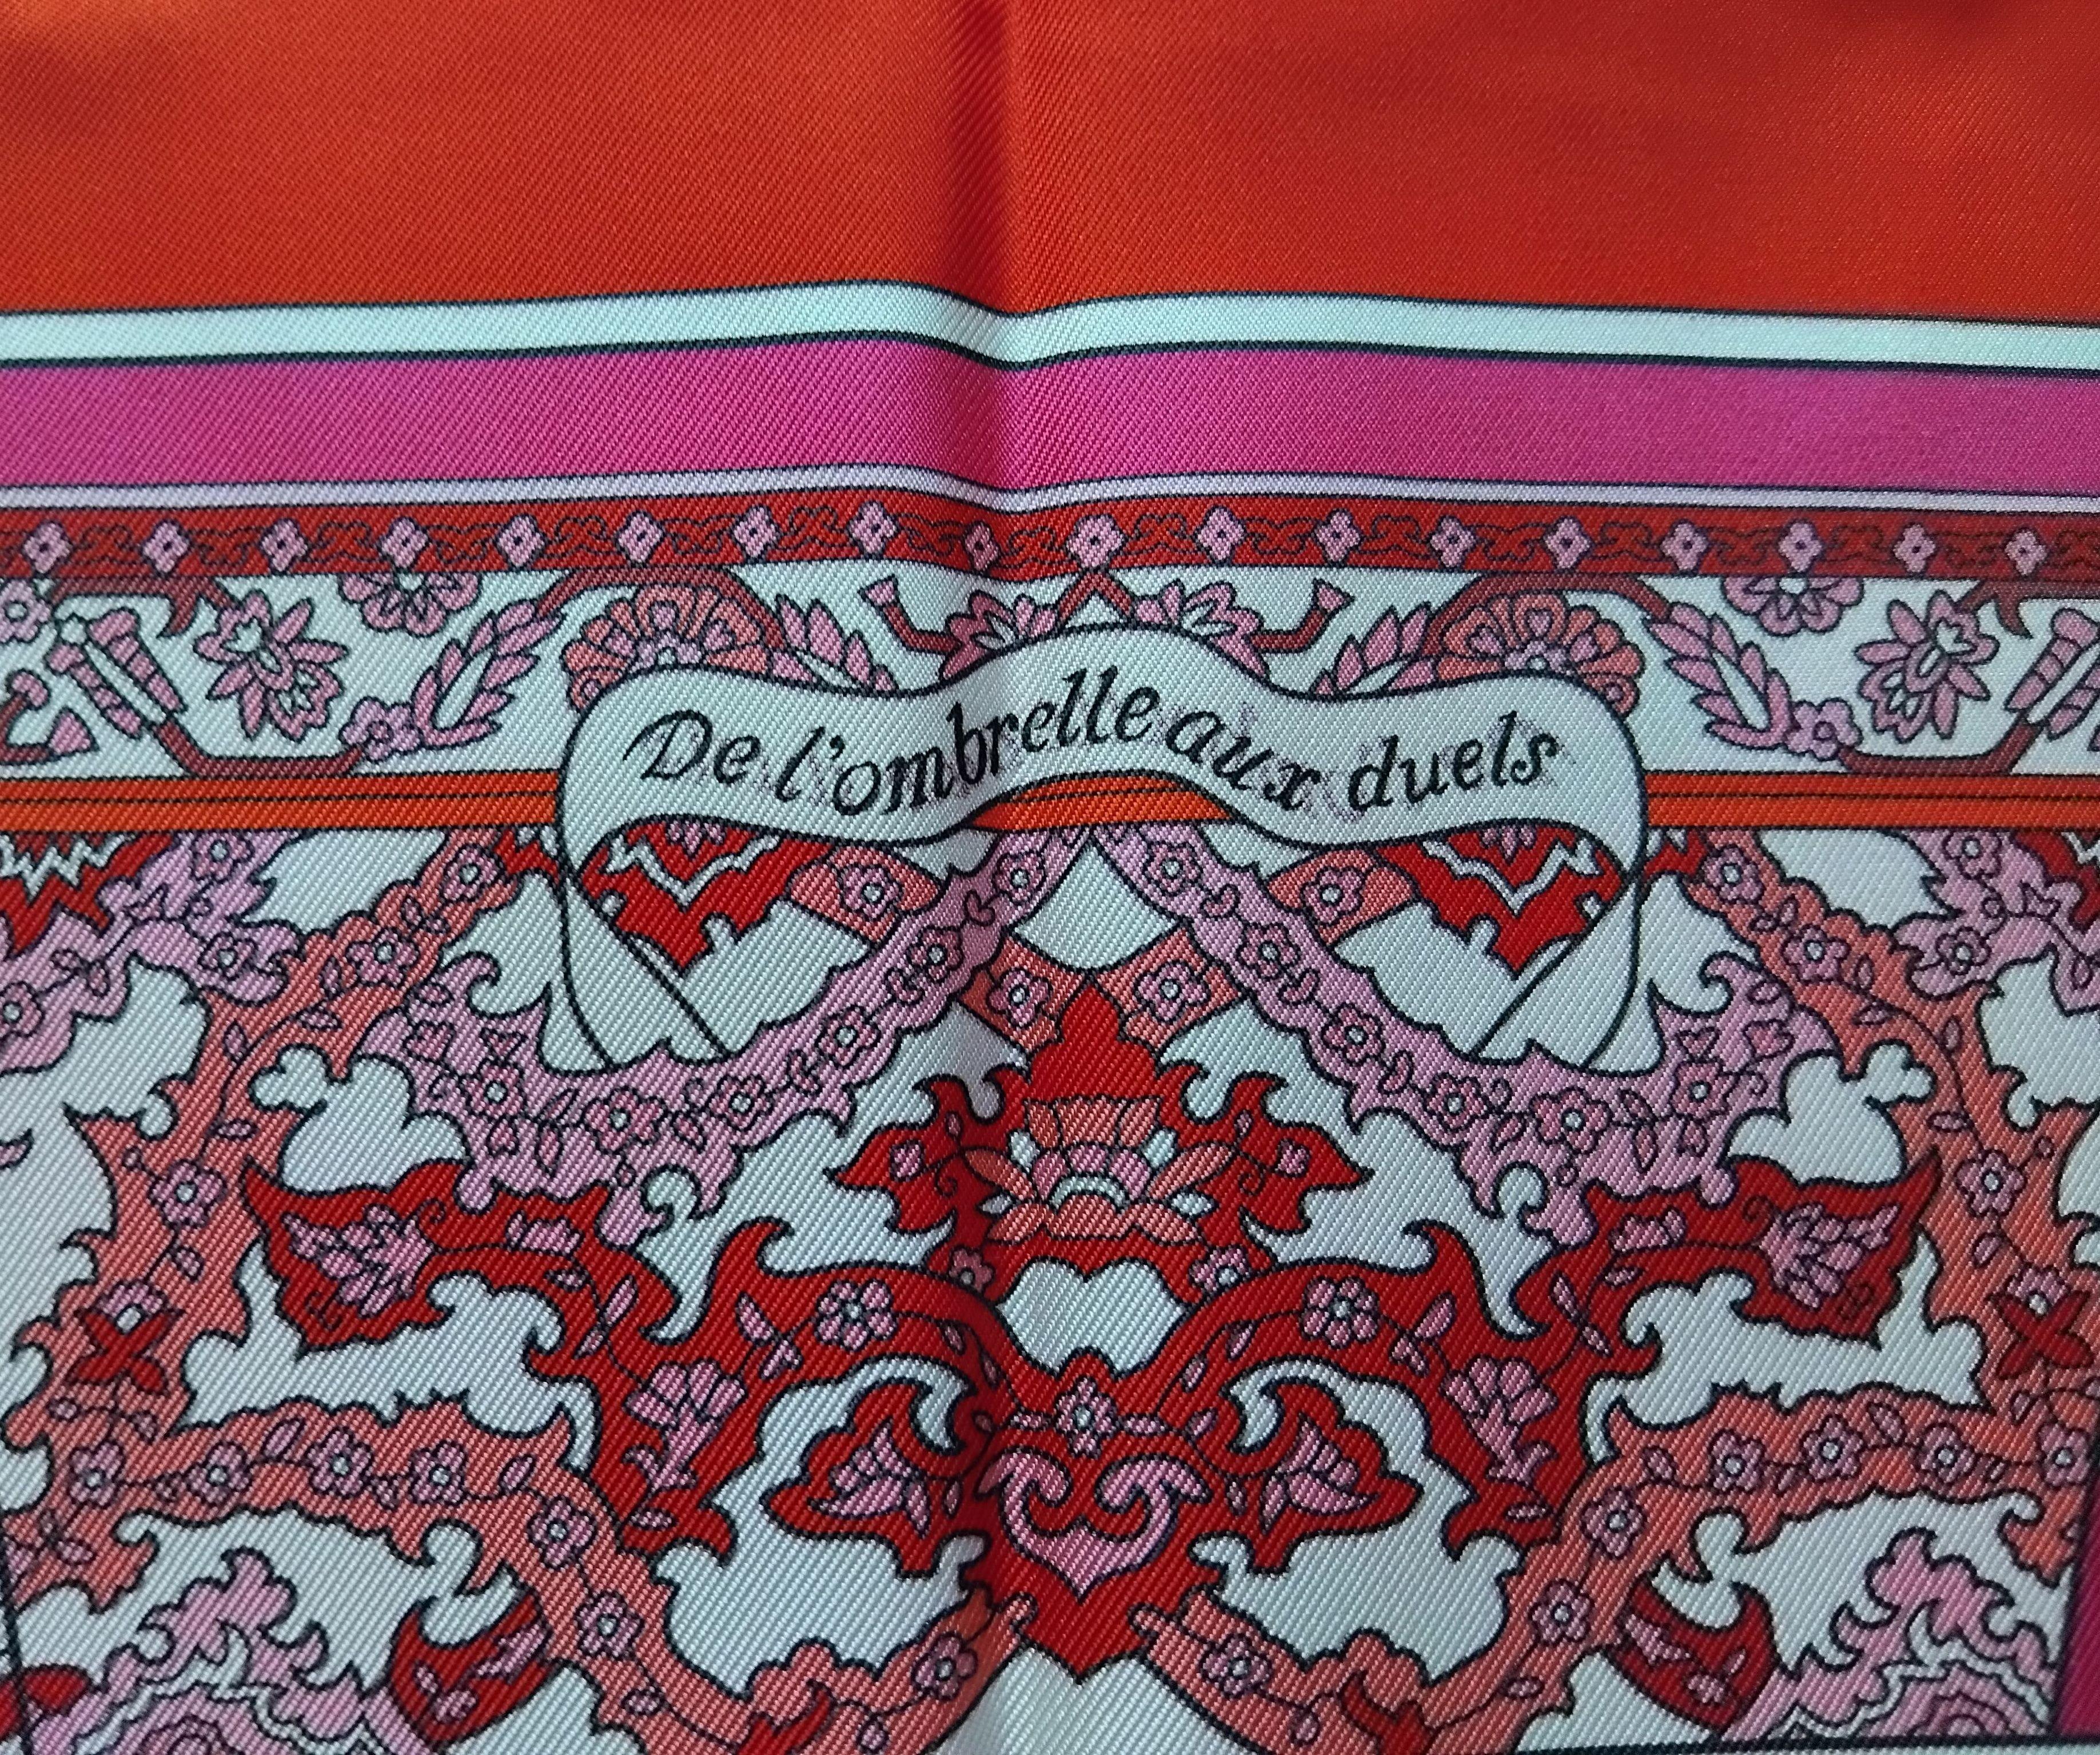 Hermès Silk Scarf De l'Ombrelle Aux Duels Double Face Pierre Marie Red Pink 35' For Sale 7